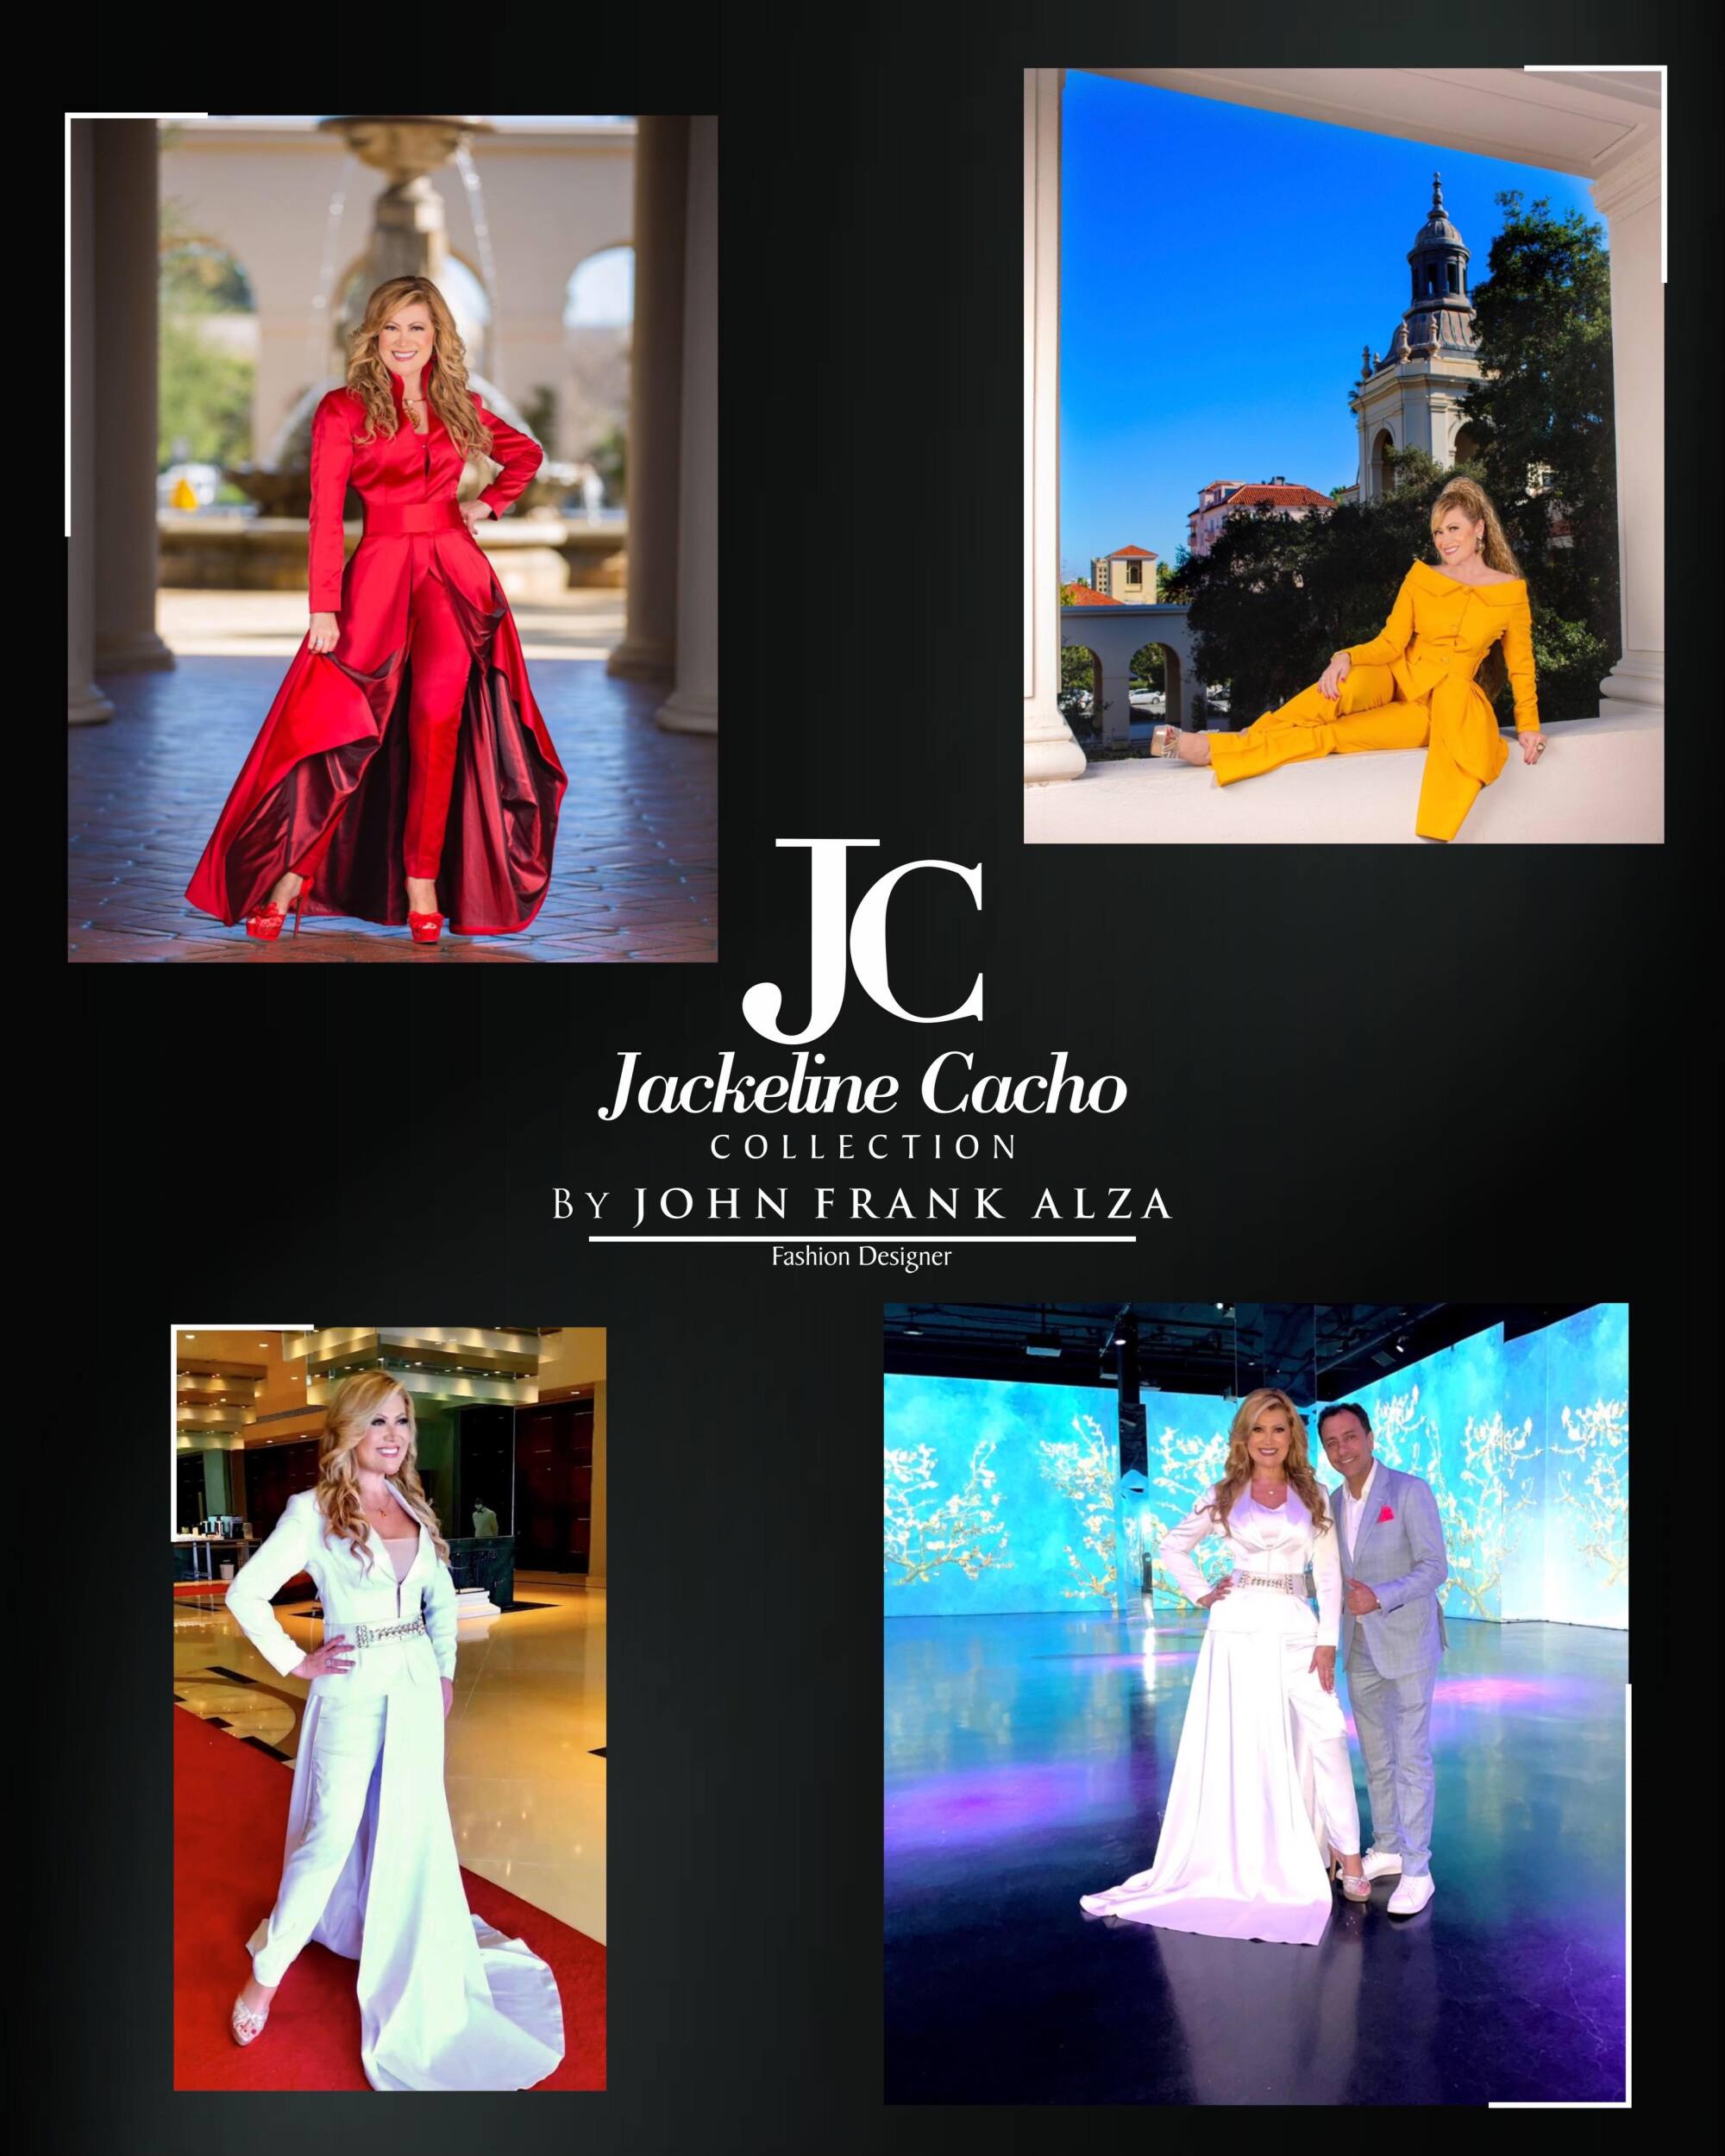 Una muestra de la colección de ropa lanzada por Jackeline Cacho recientemente.